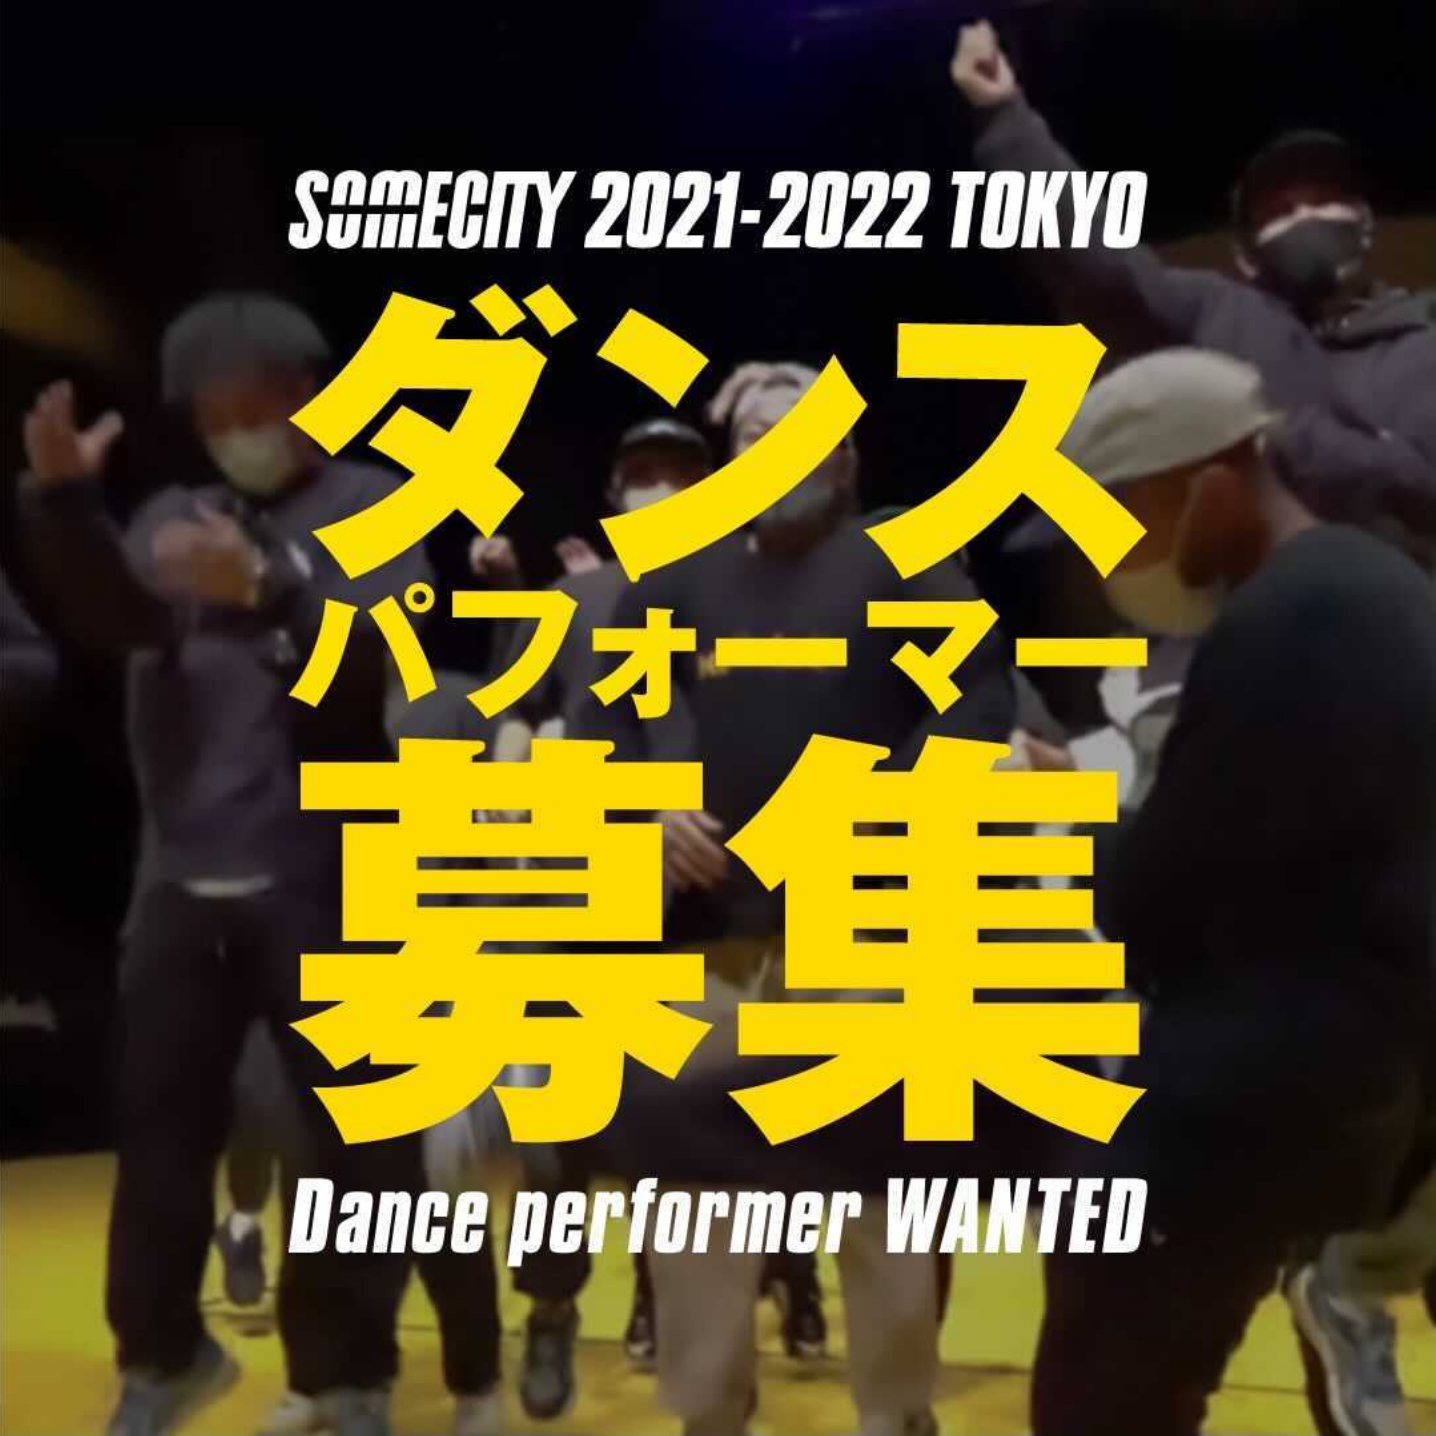 【求ム】SOMECITY TOKYOダンスパフォーマー募集